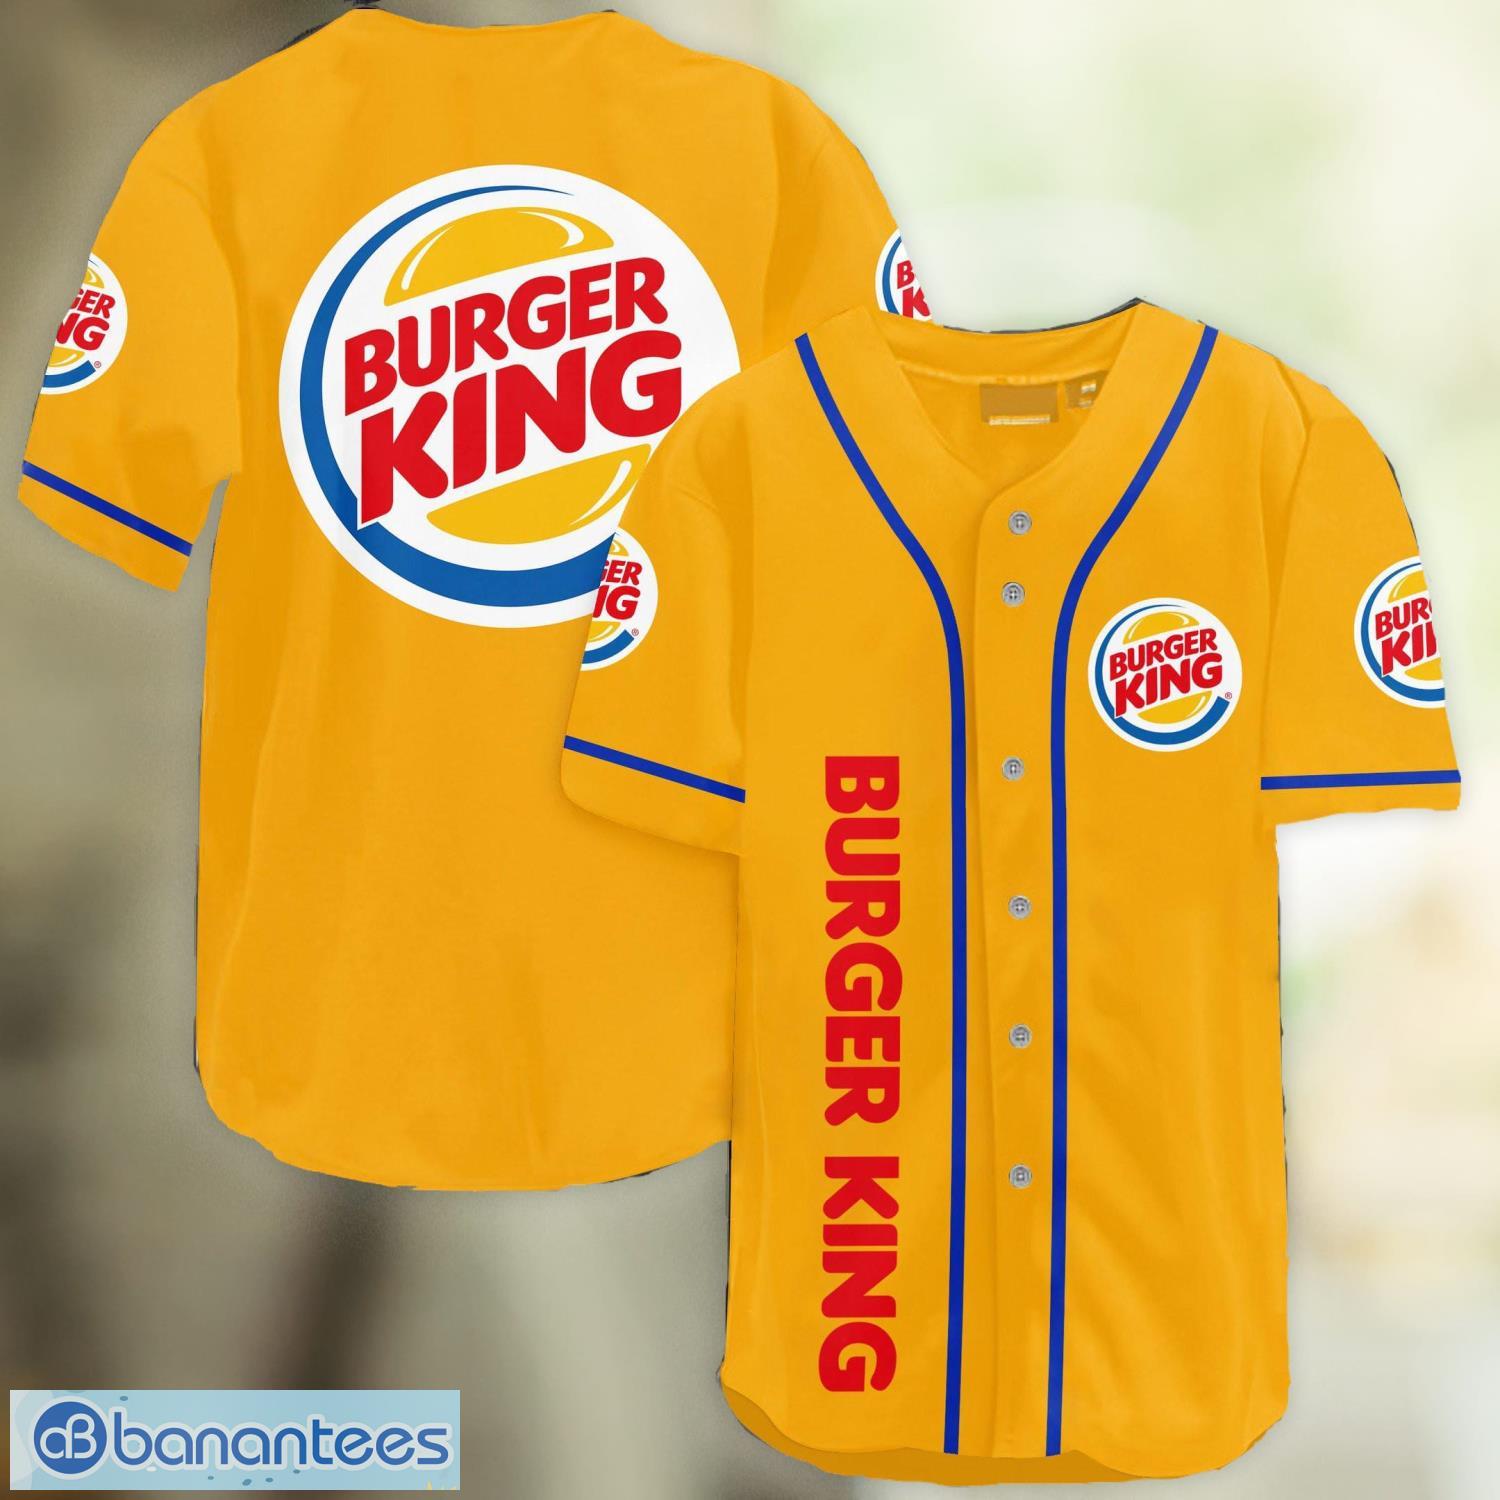 Burger King Jersey 